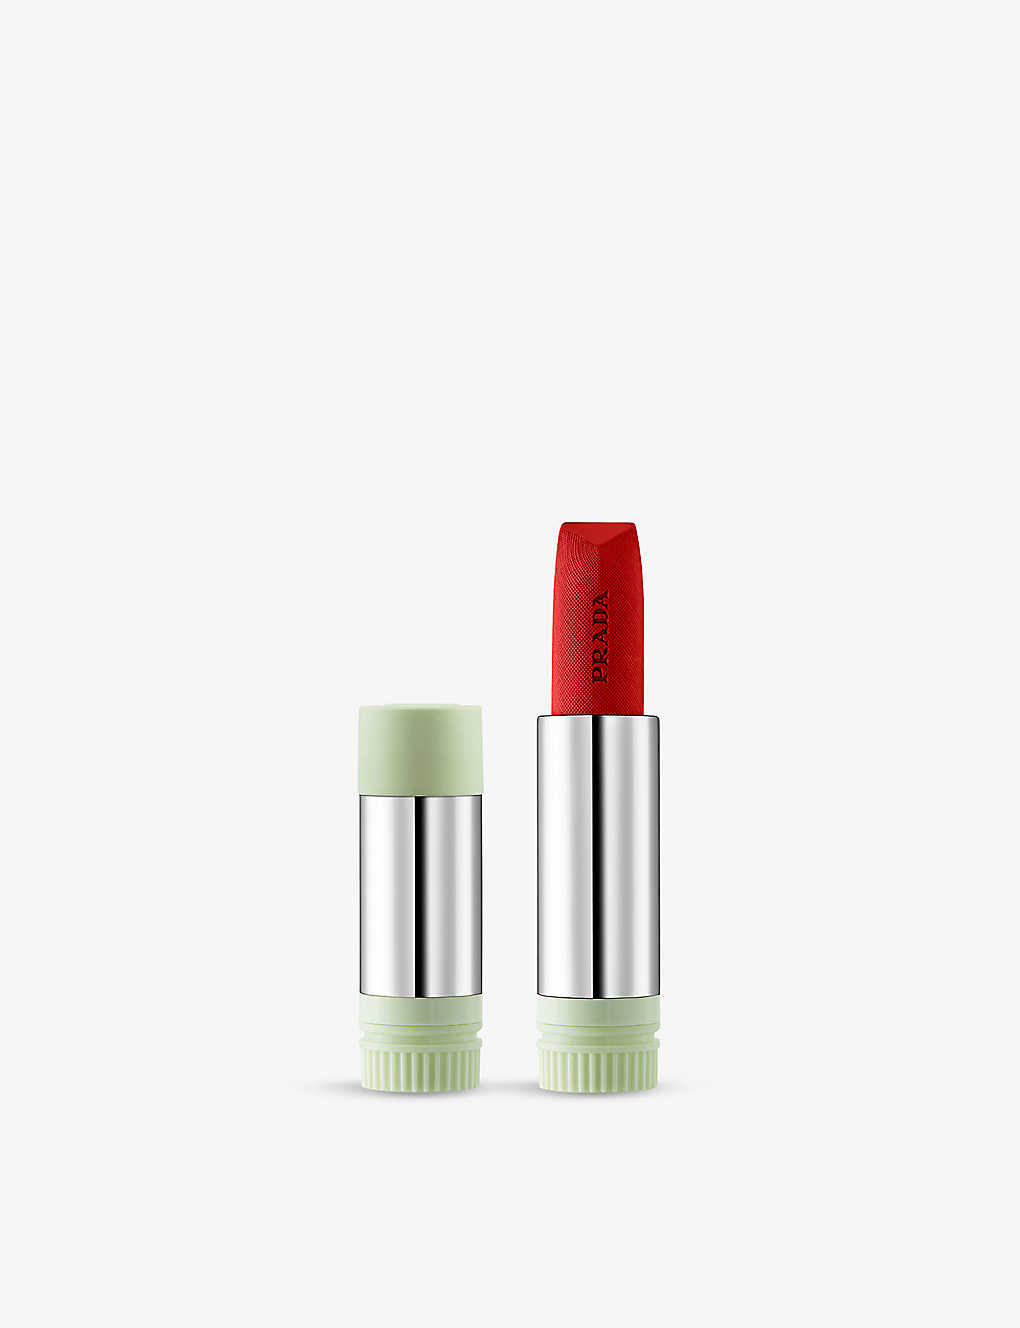 Prada Fuoco Hyper Matte Monochrome Lipstick Refill 3.8g